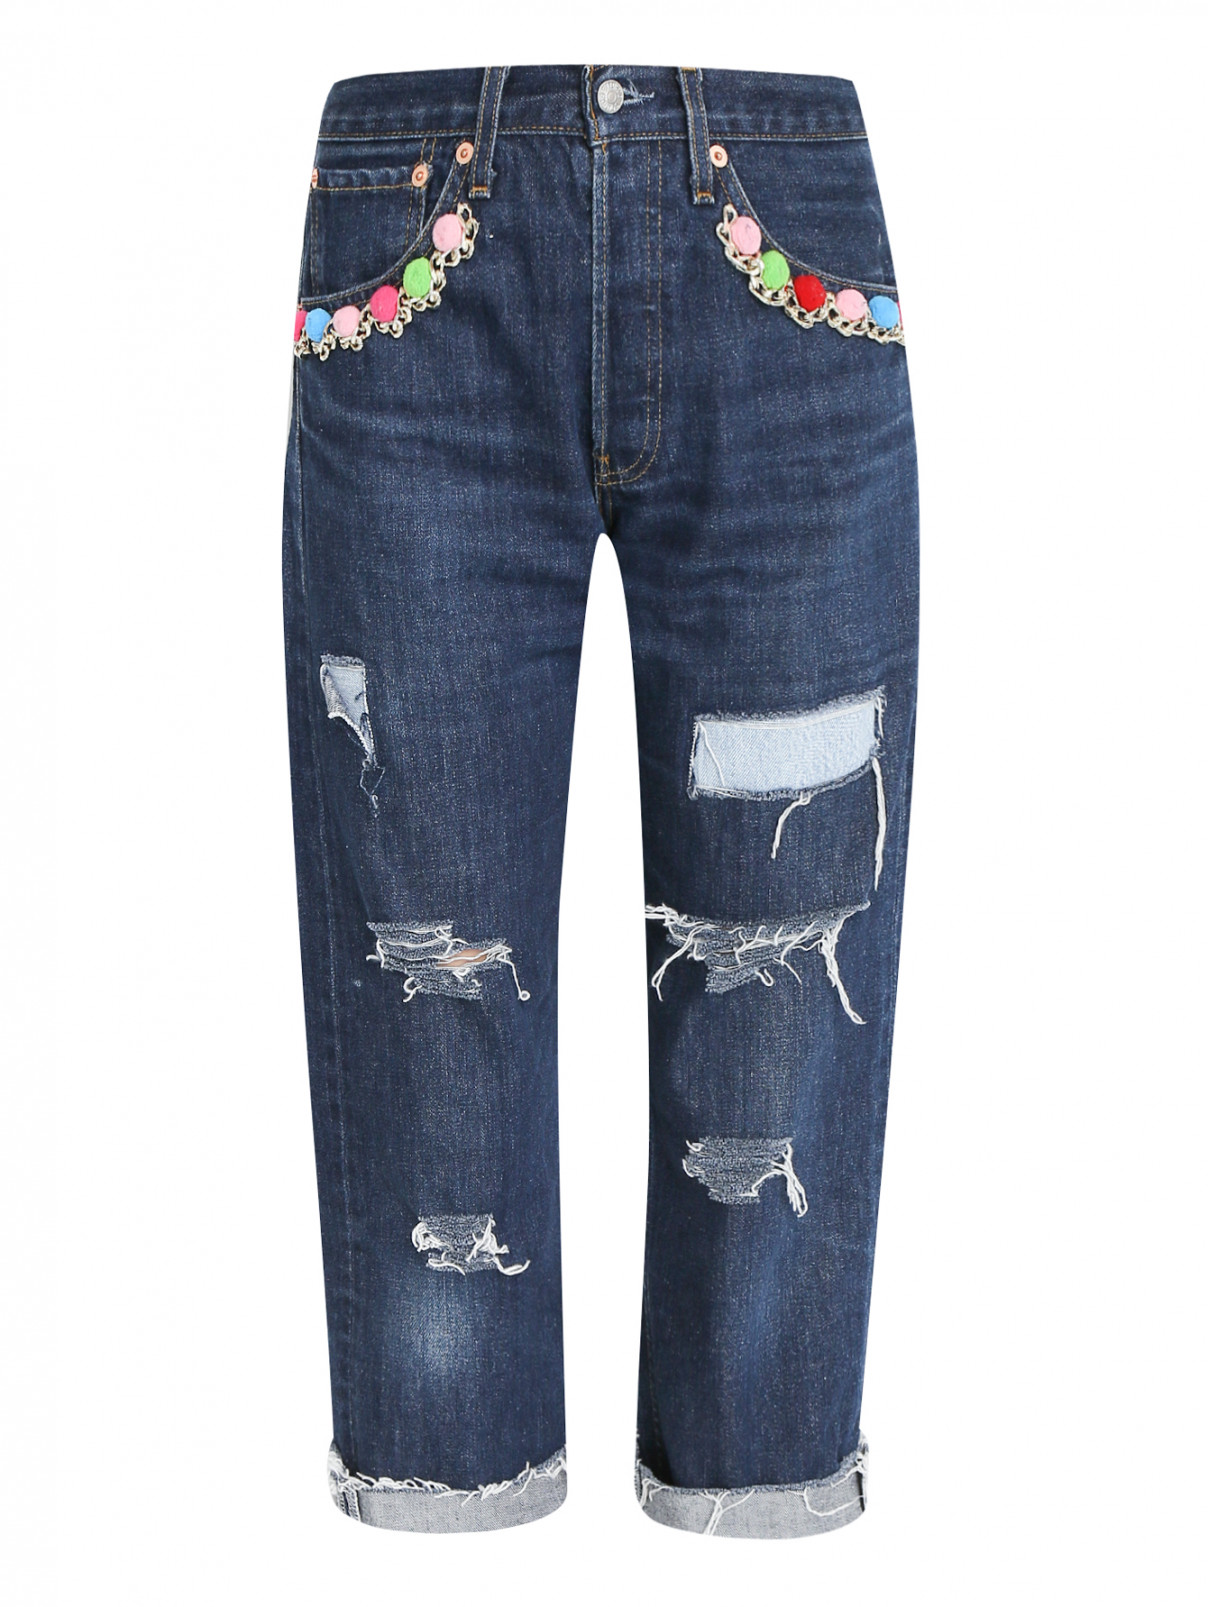 Укороченные джинсы с декоративной отделкой Forte Dei Marmi Couture  –  Общий вид  – Цвет:  Синий